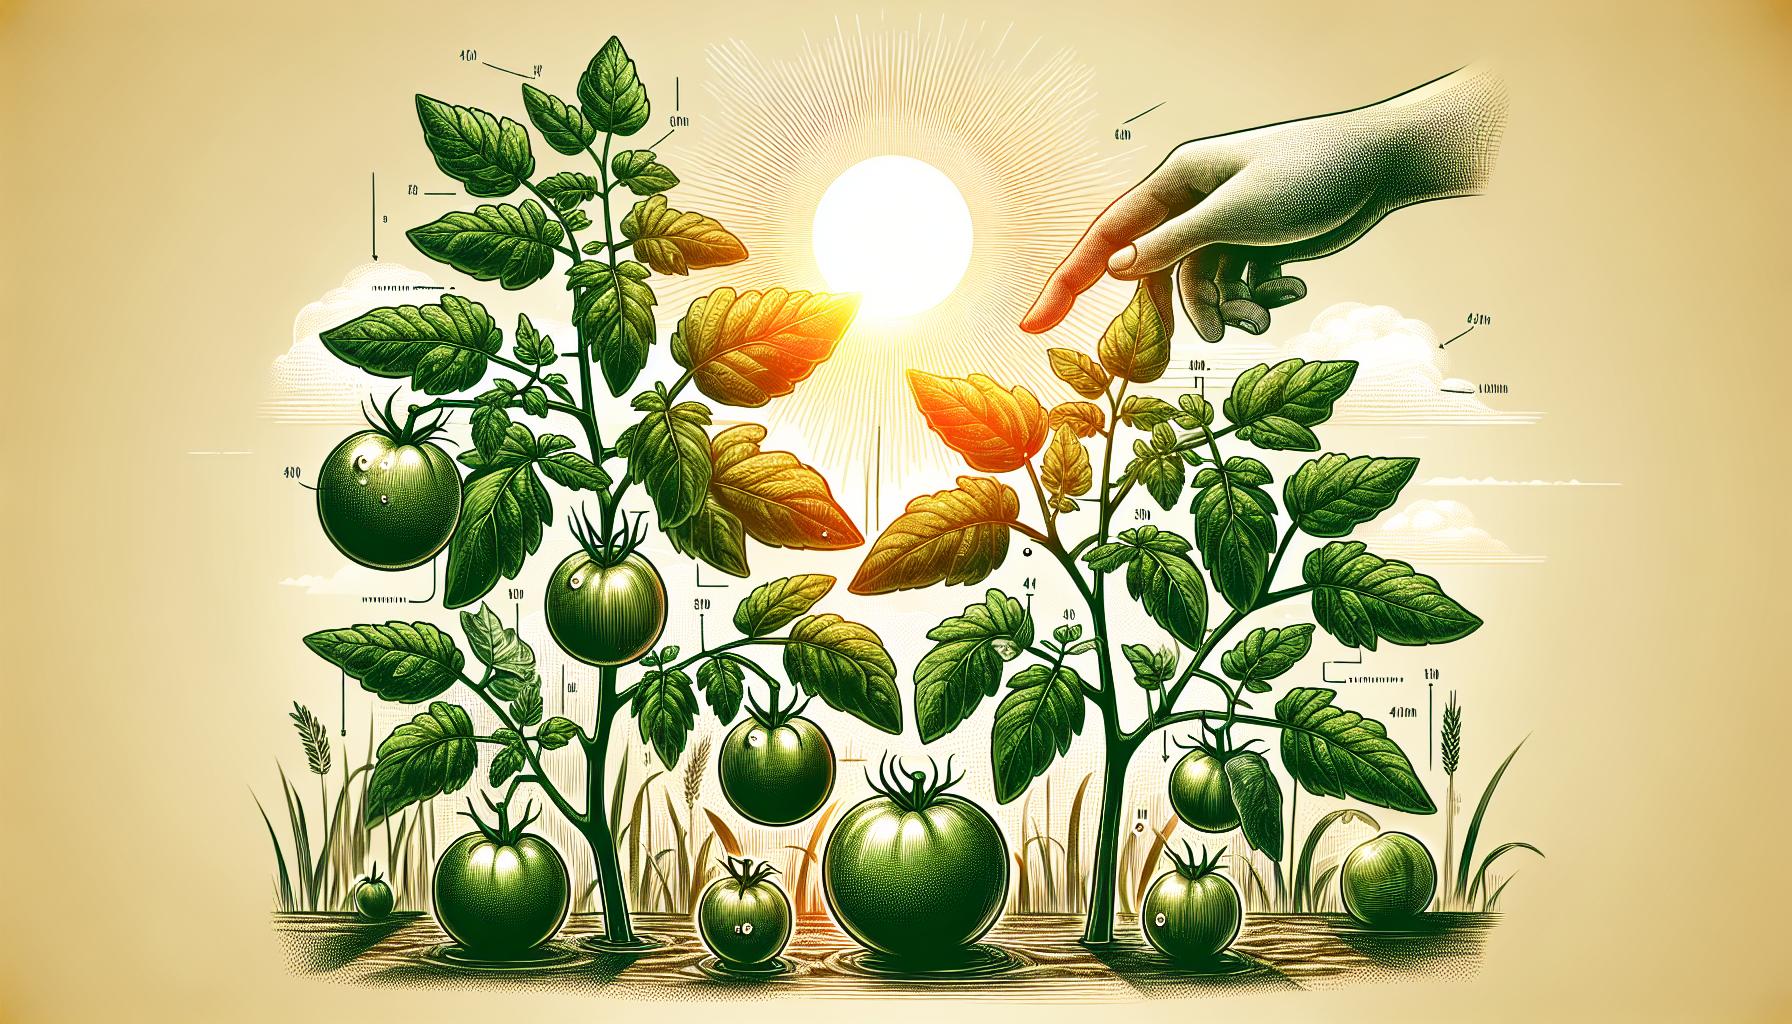 sustainable gardening tomato plants sunlight